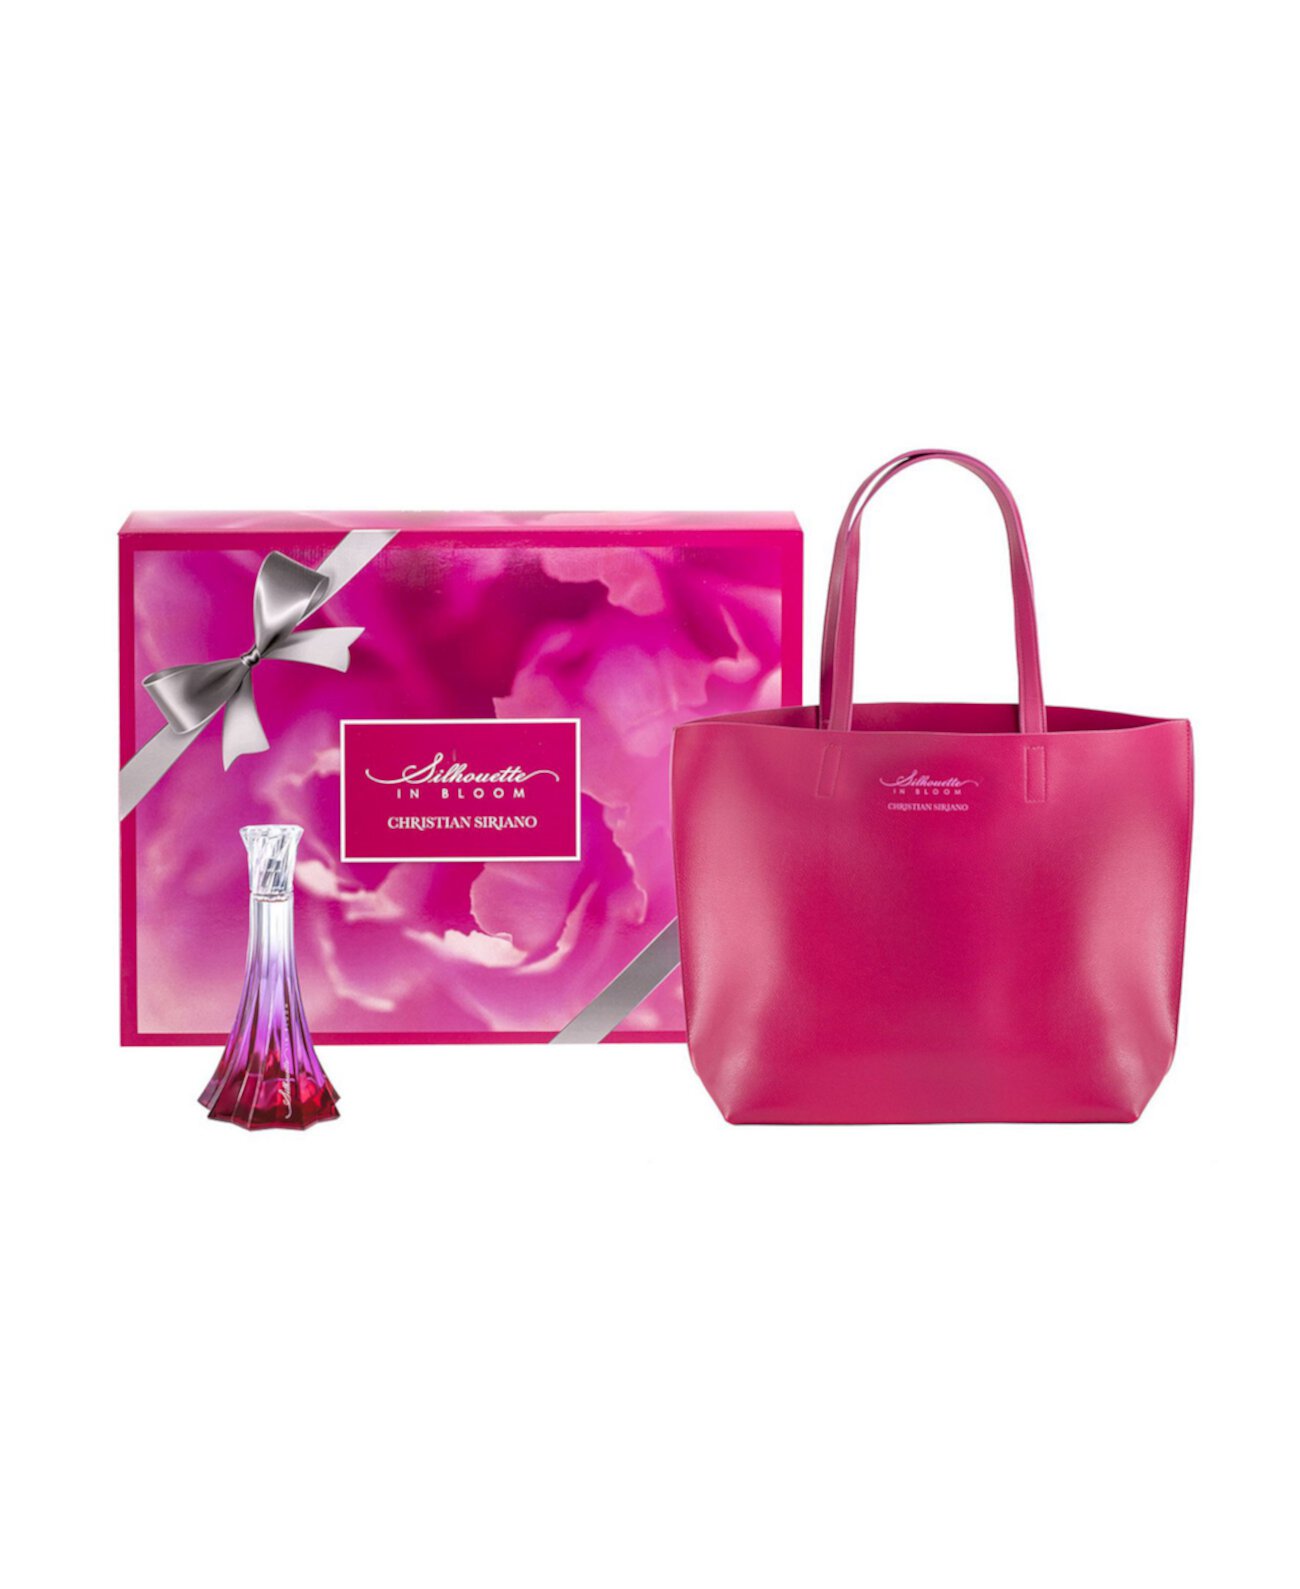 Подарочный набор для парфюмерии Silhouette in Bloom для женщин с большой сумкой, 2 предмета Christian Siriano